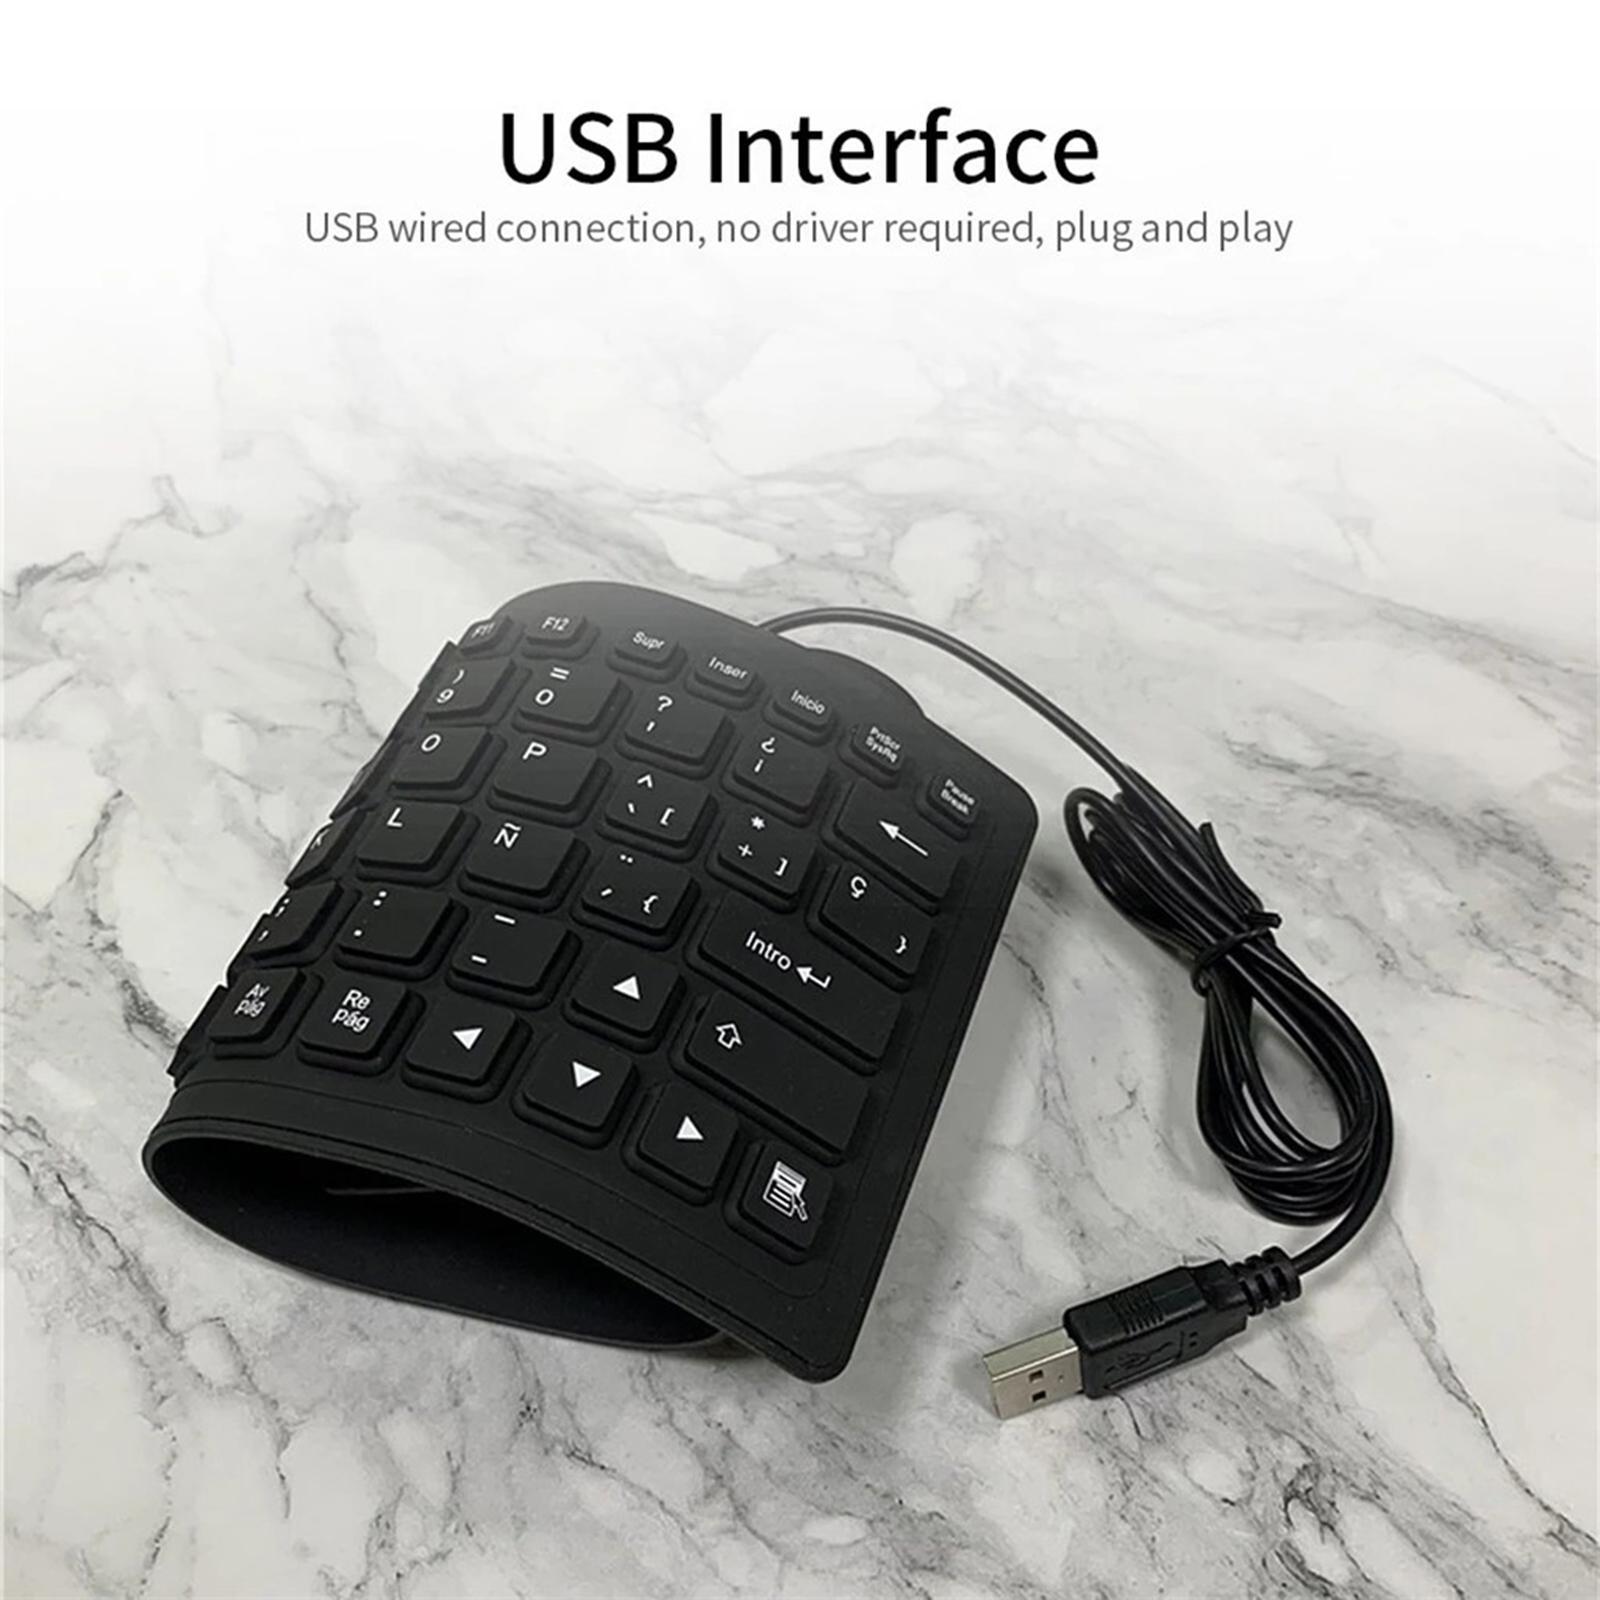 USB Foldable 84 Keys Spanish Keyboard Waterproof for Desktop Computer Laptop